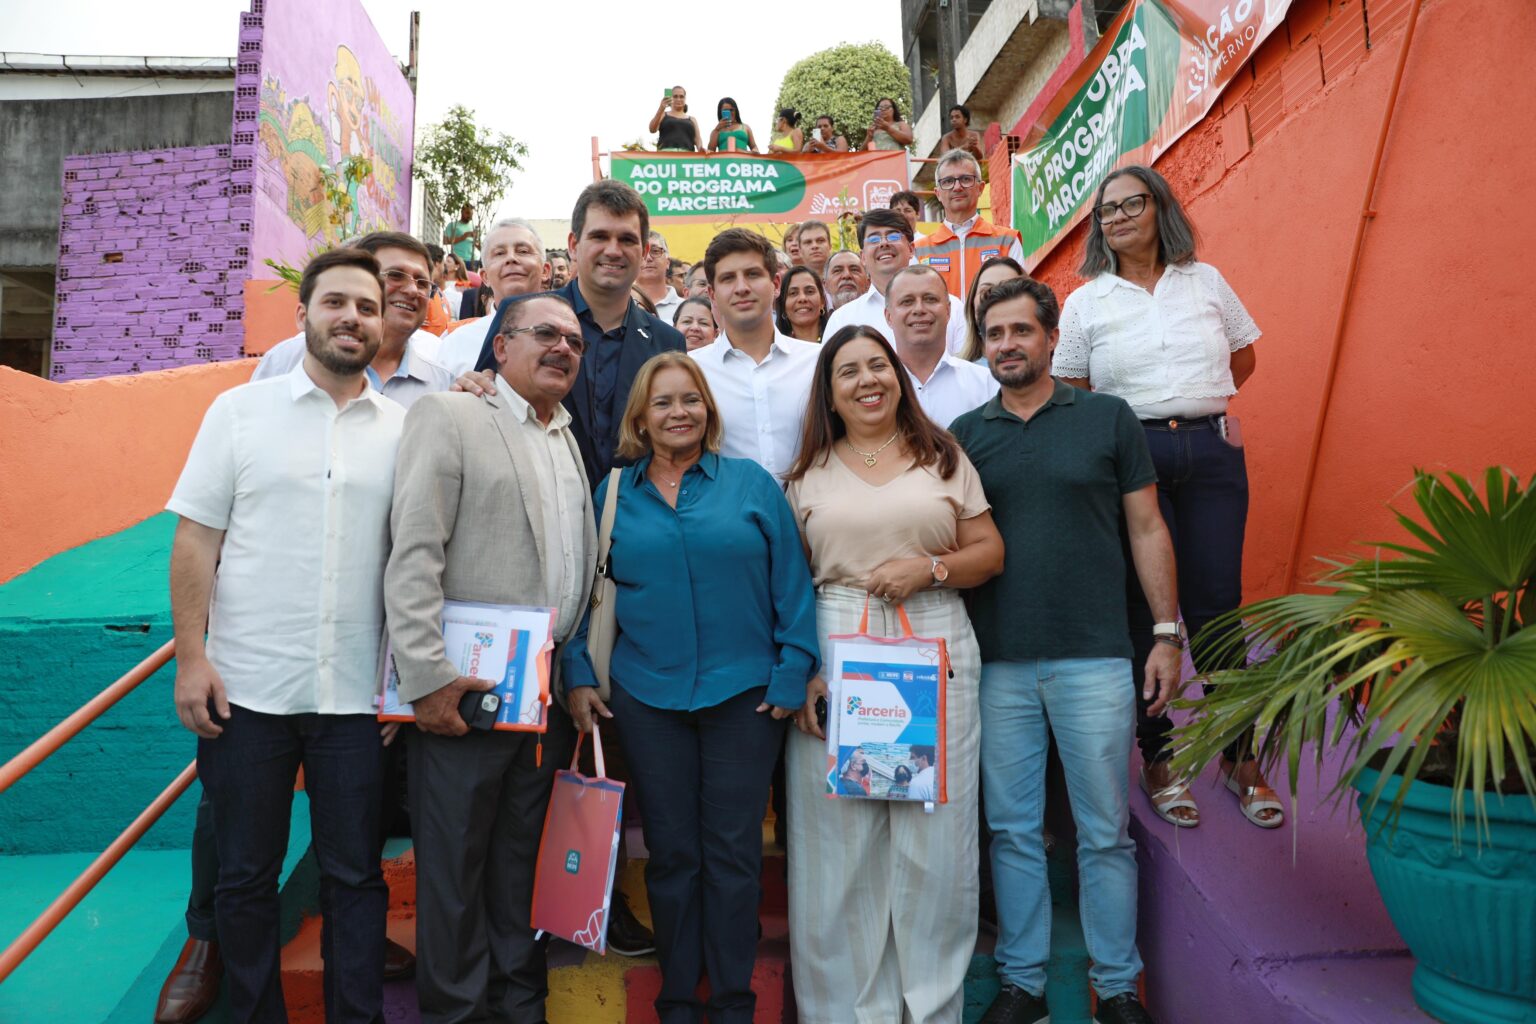  João Campos apresenta Programa Parceria a prefeitos de Pernambuco em visita ao Brejo de Beberibe